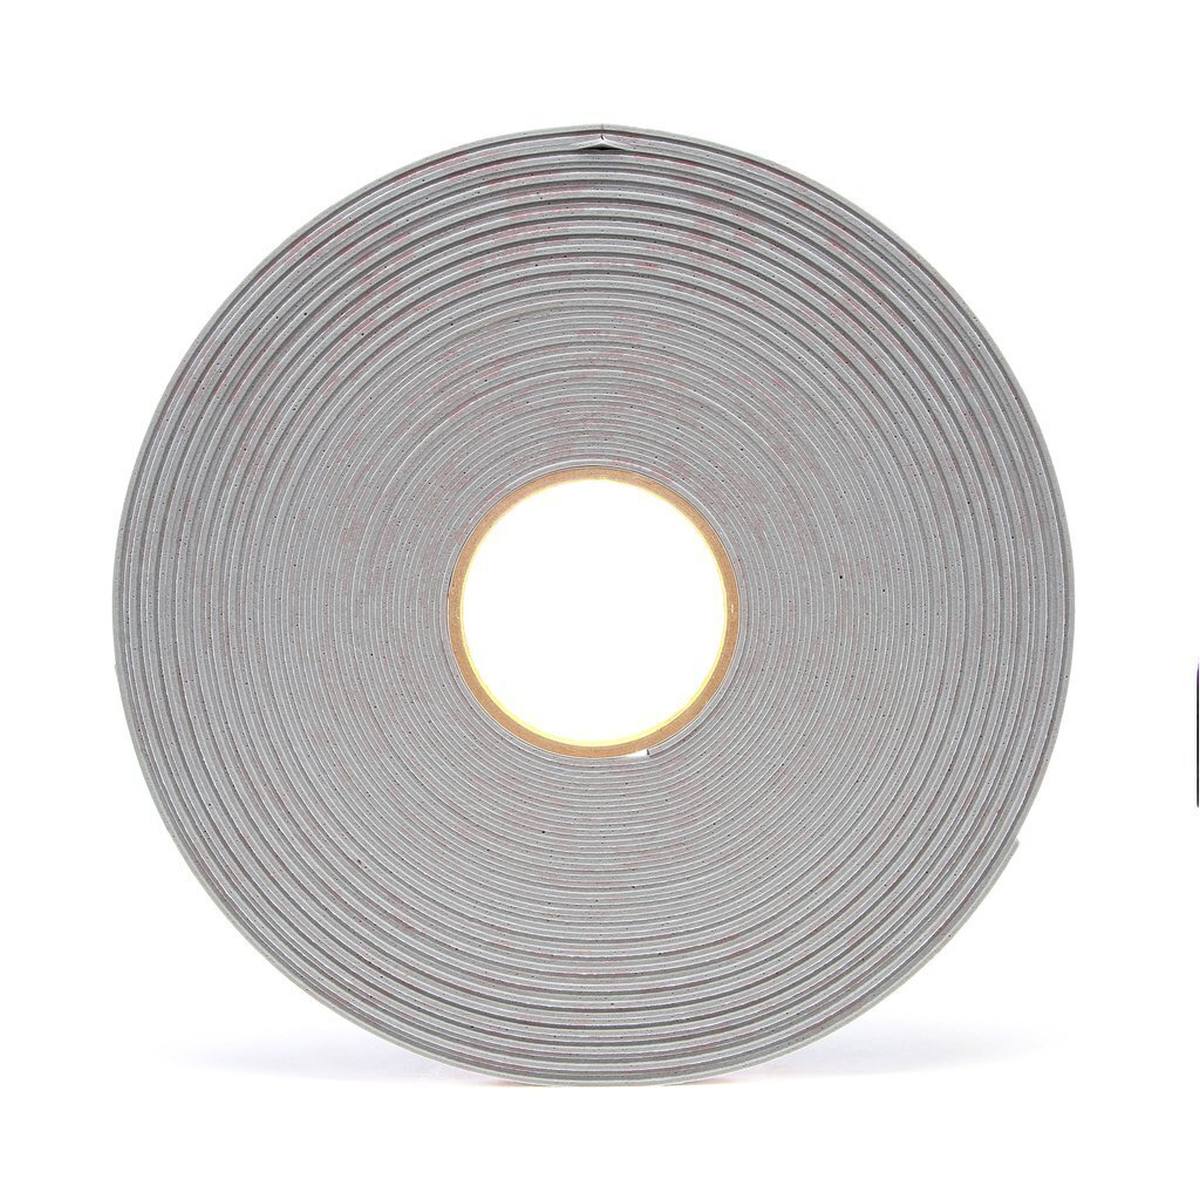 3M VHB adhesive tape 4956P, gray, 9 mm x 33 m, 1.6 mm